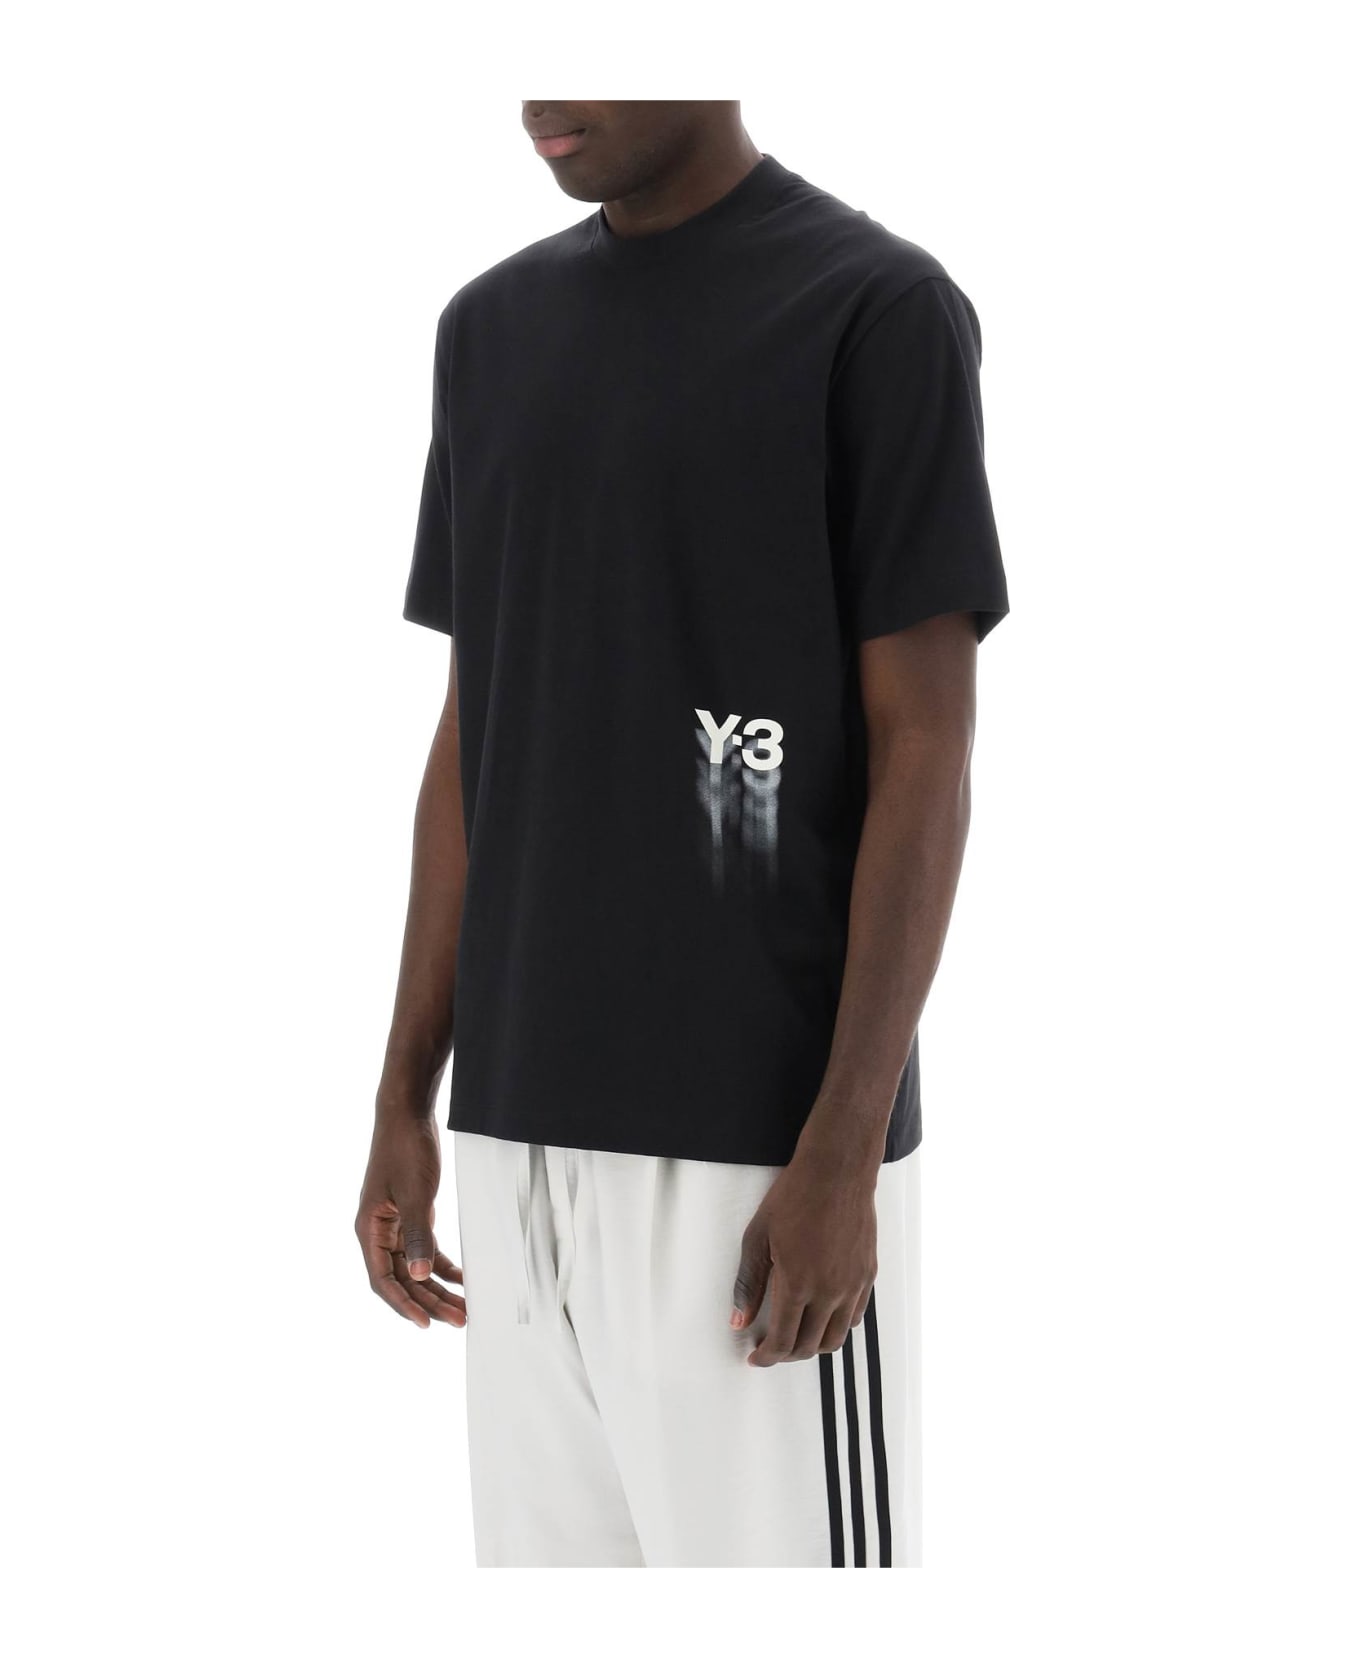 Y-3 Gfx T-shirt - Black Tシャツ